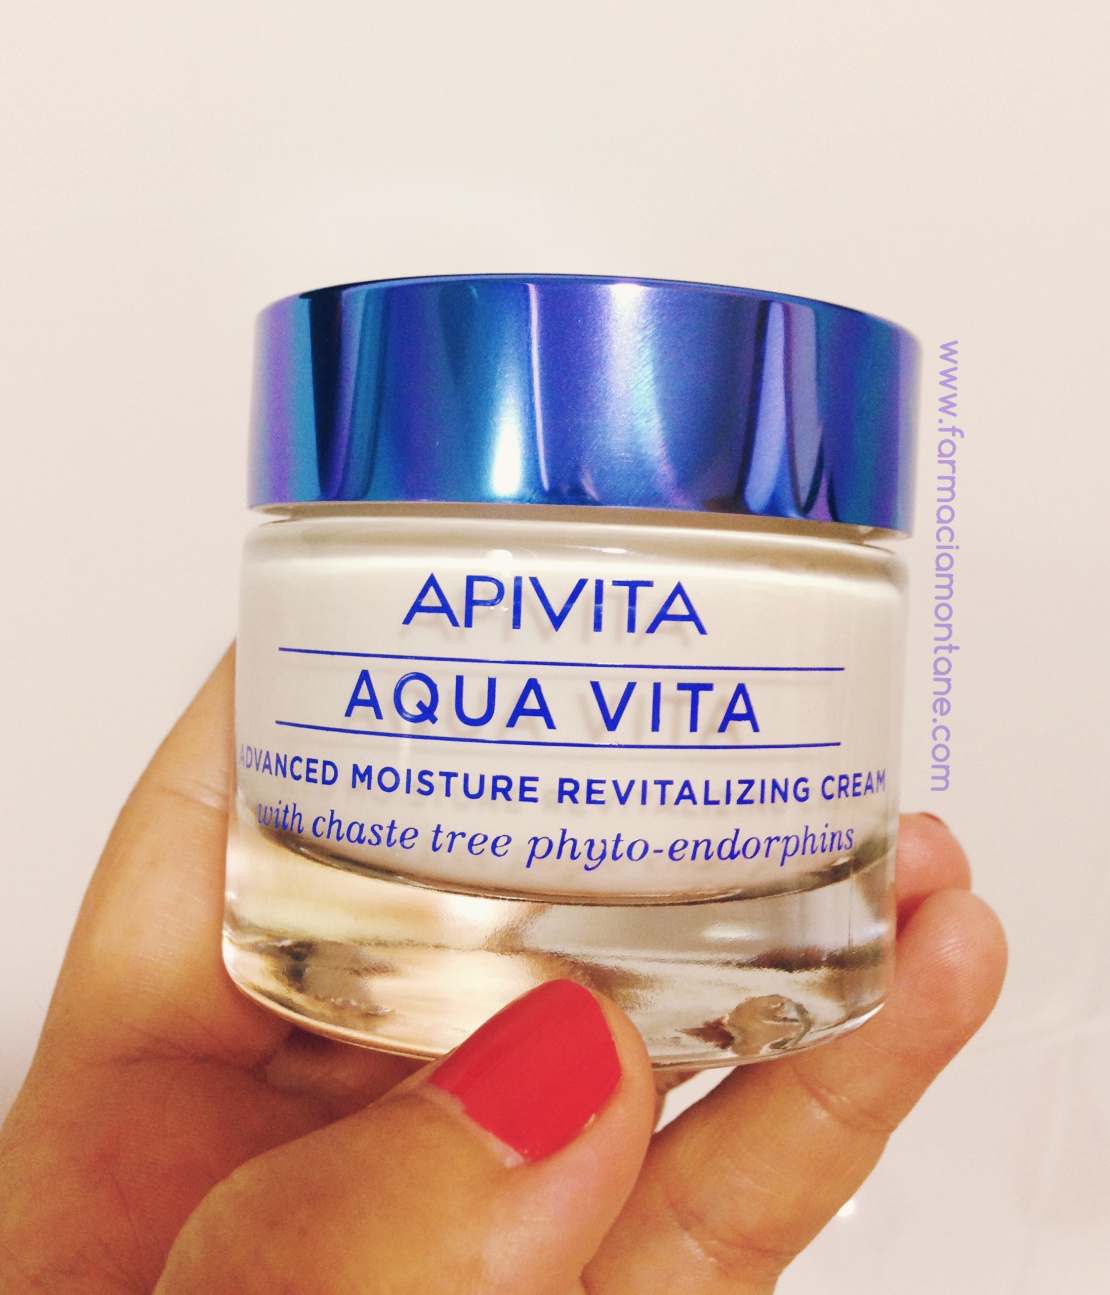 Aquavita Apivita, la clve de la hidratación facial